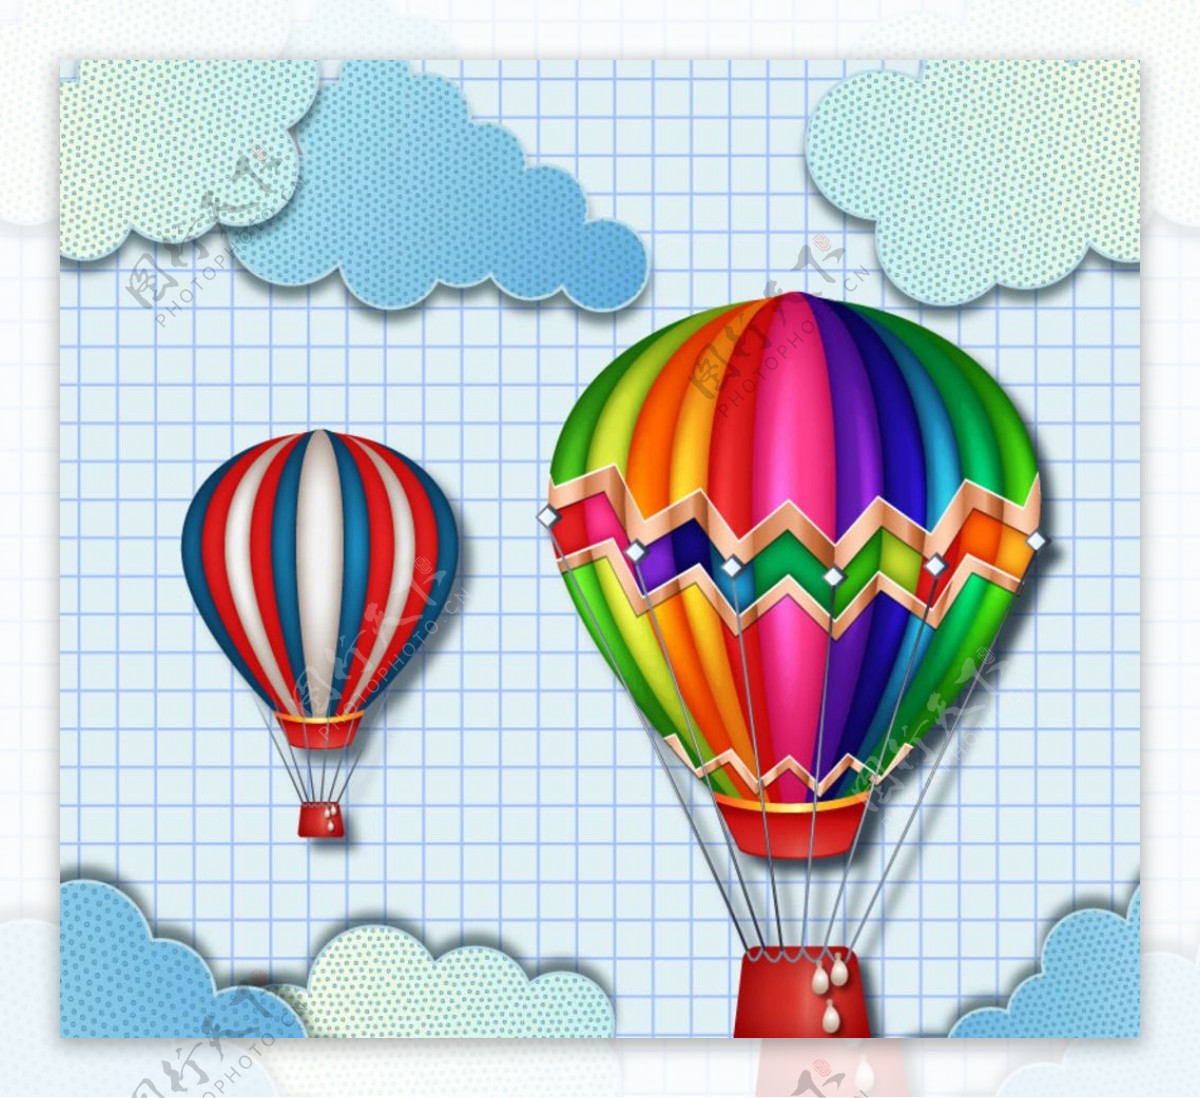 彩色热气球设计矢量素材